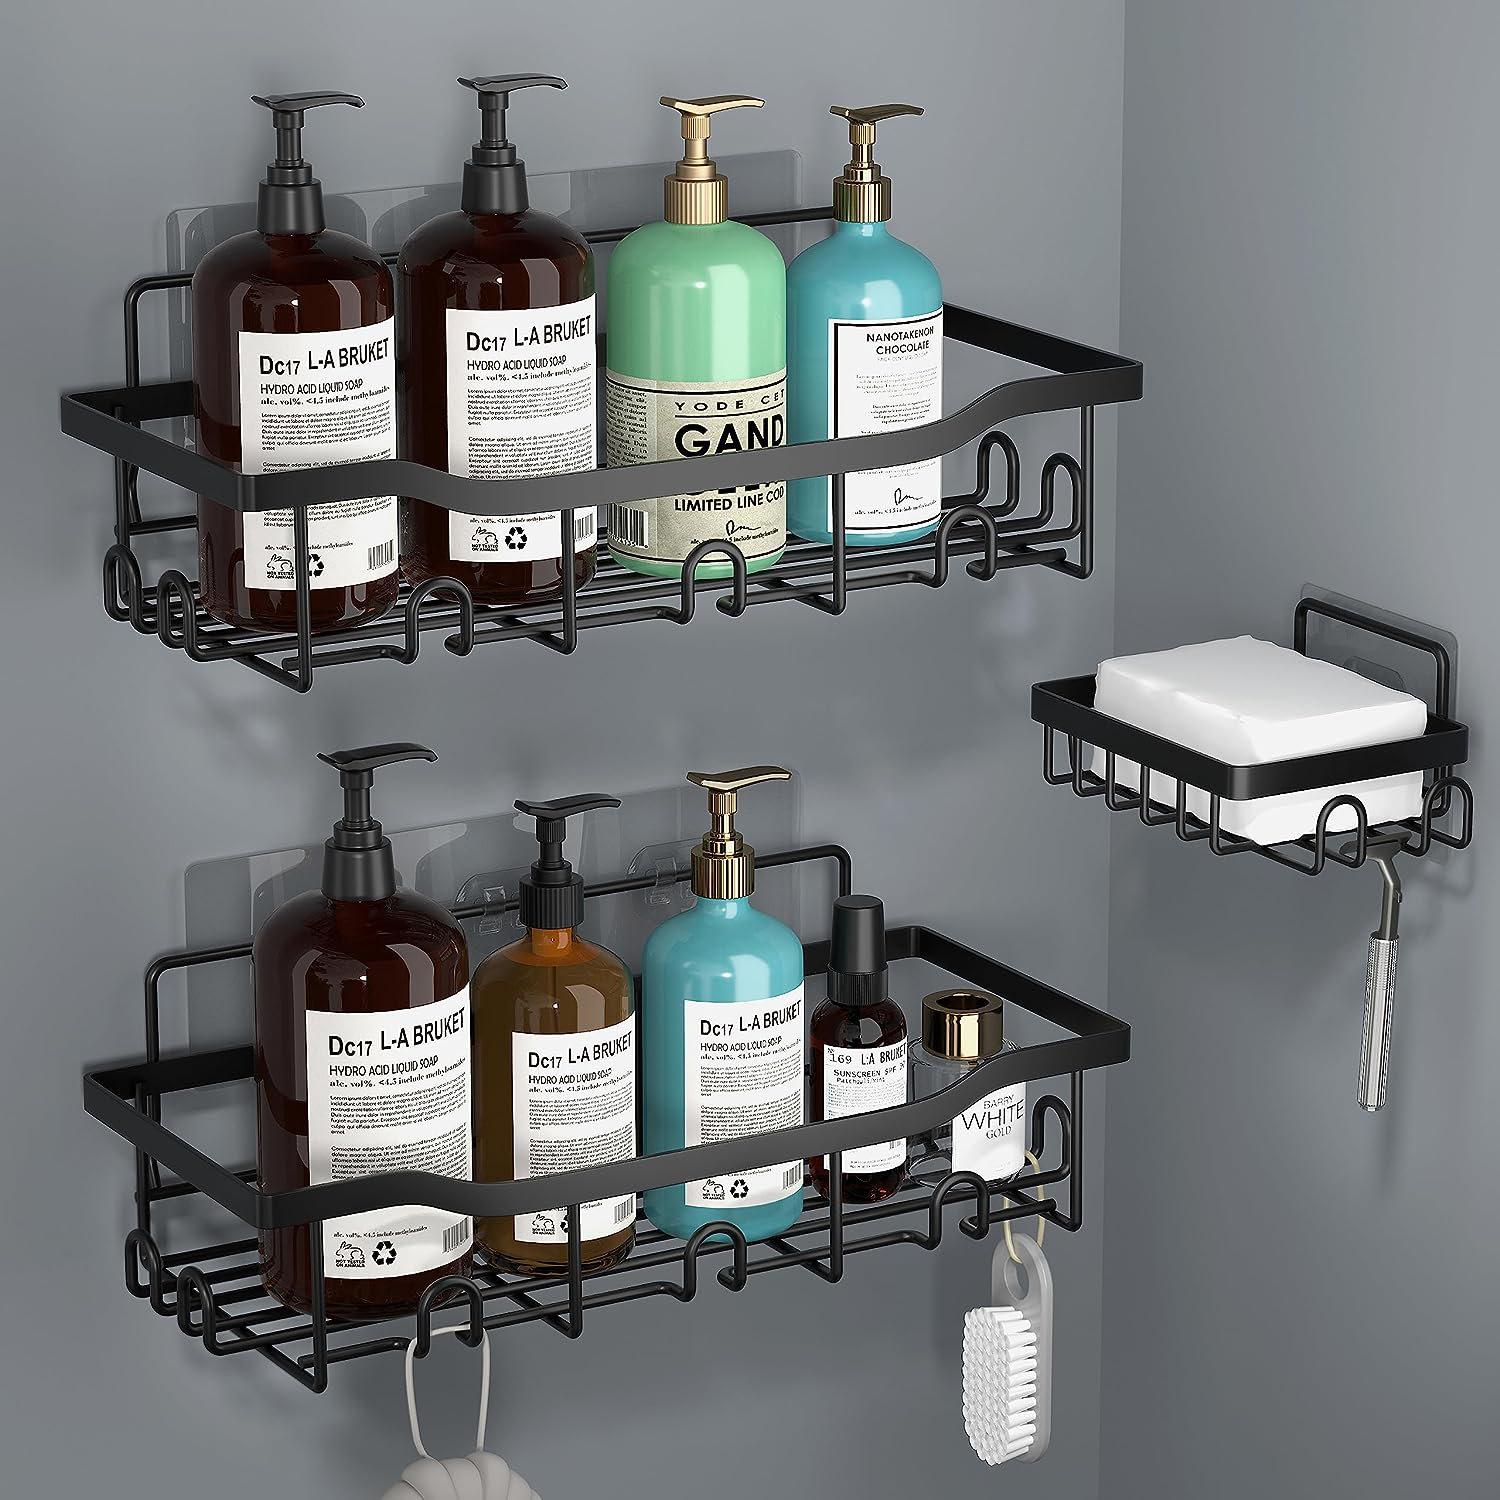 Shower Caddy, Adhesive Organizer 3 Pack, Drilling Shelf Basket, Rustproof  Rack with Soap Holder, Shelves for Inside Bathroom Kitchen Storage (Black)